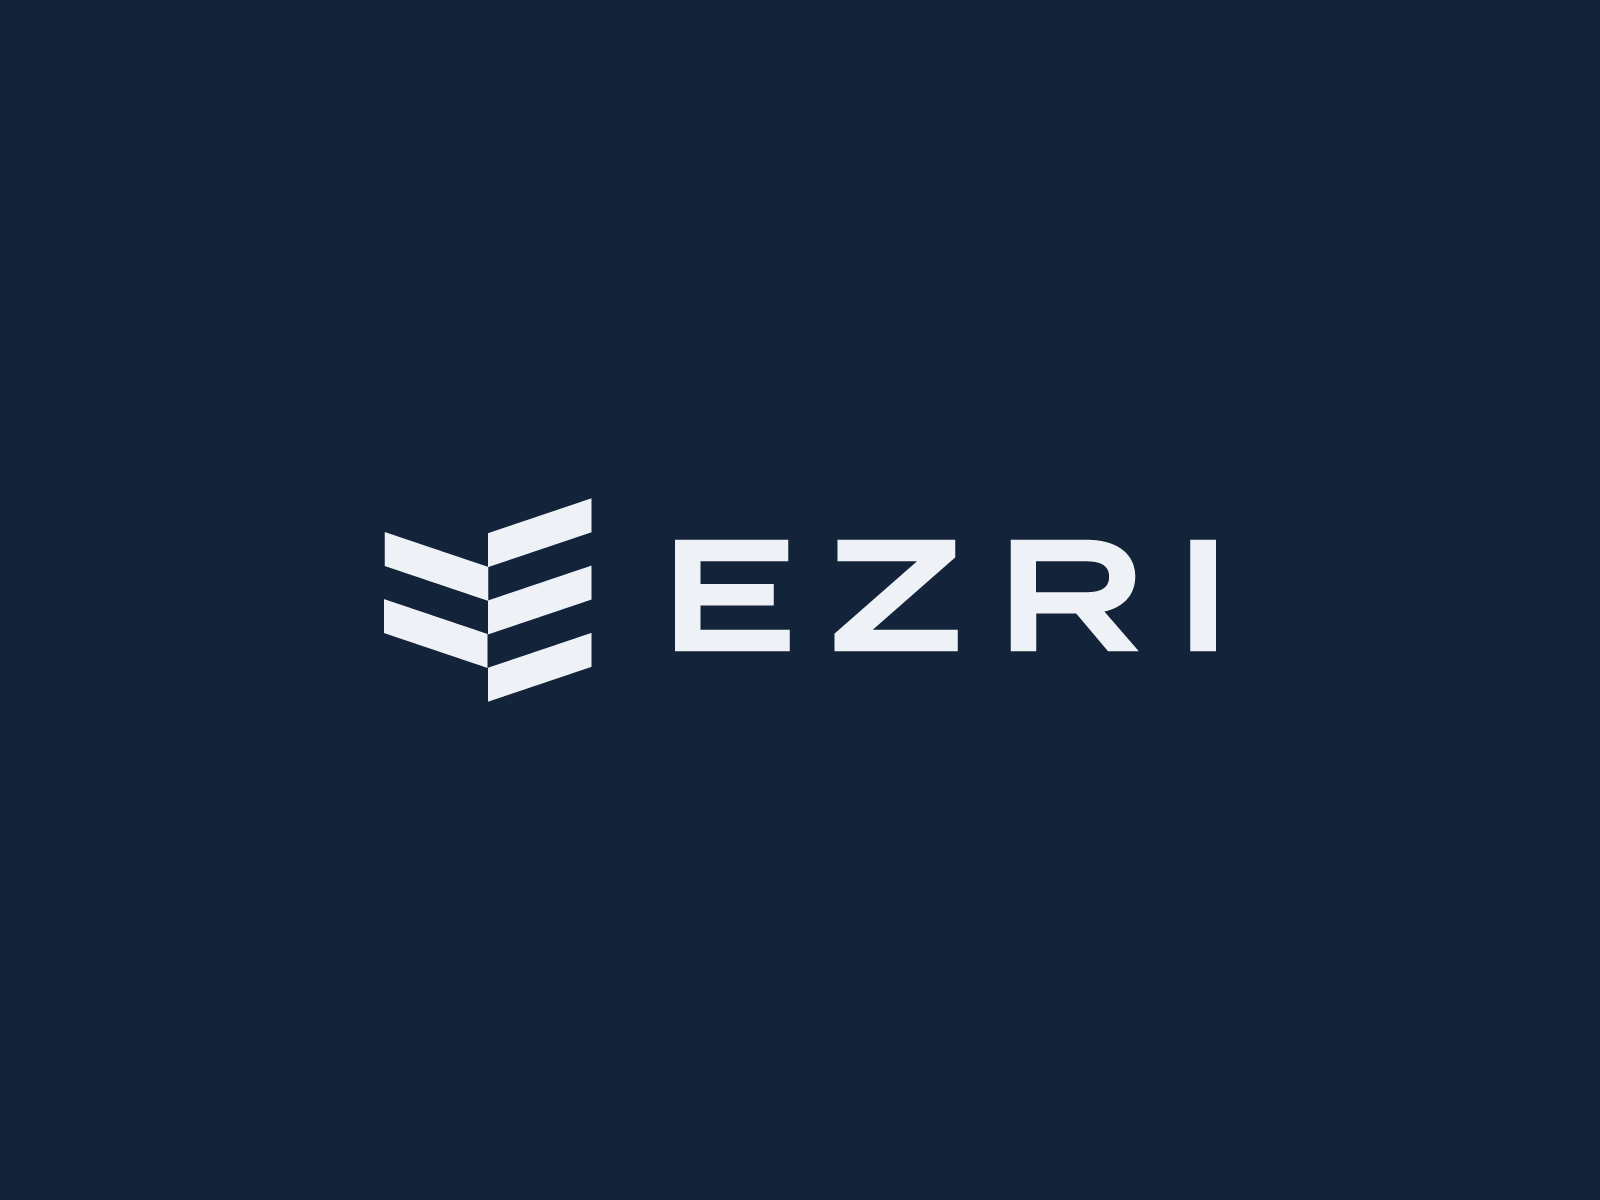 EZRI Logo by Daniel Young on Dribbble